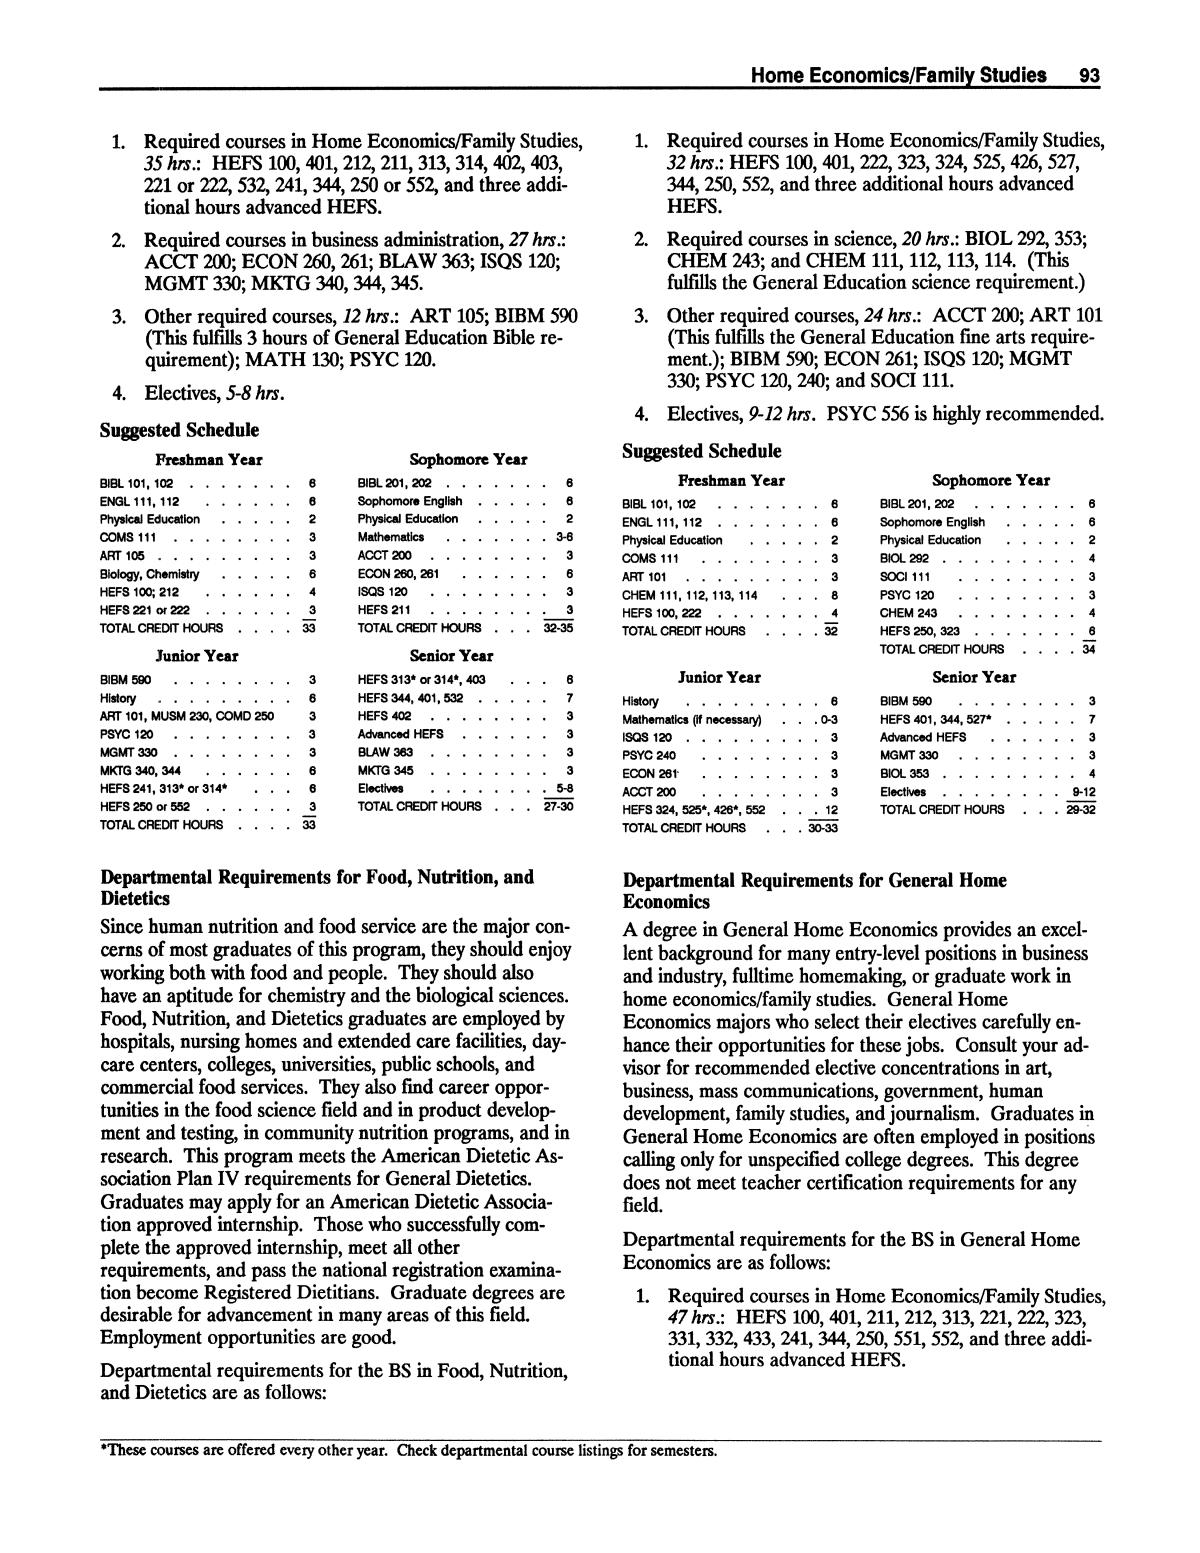 Catalog of Abilene Christian University, 1988-1989
                                                
                                                    93
                                                